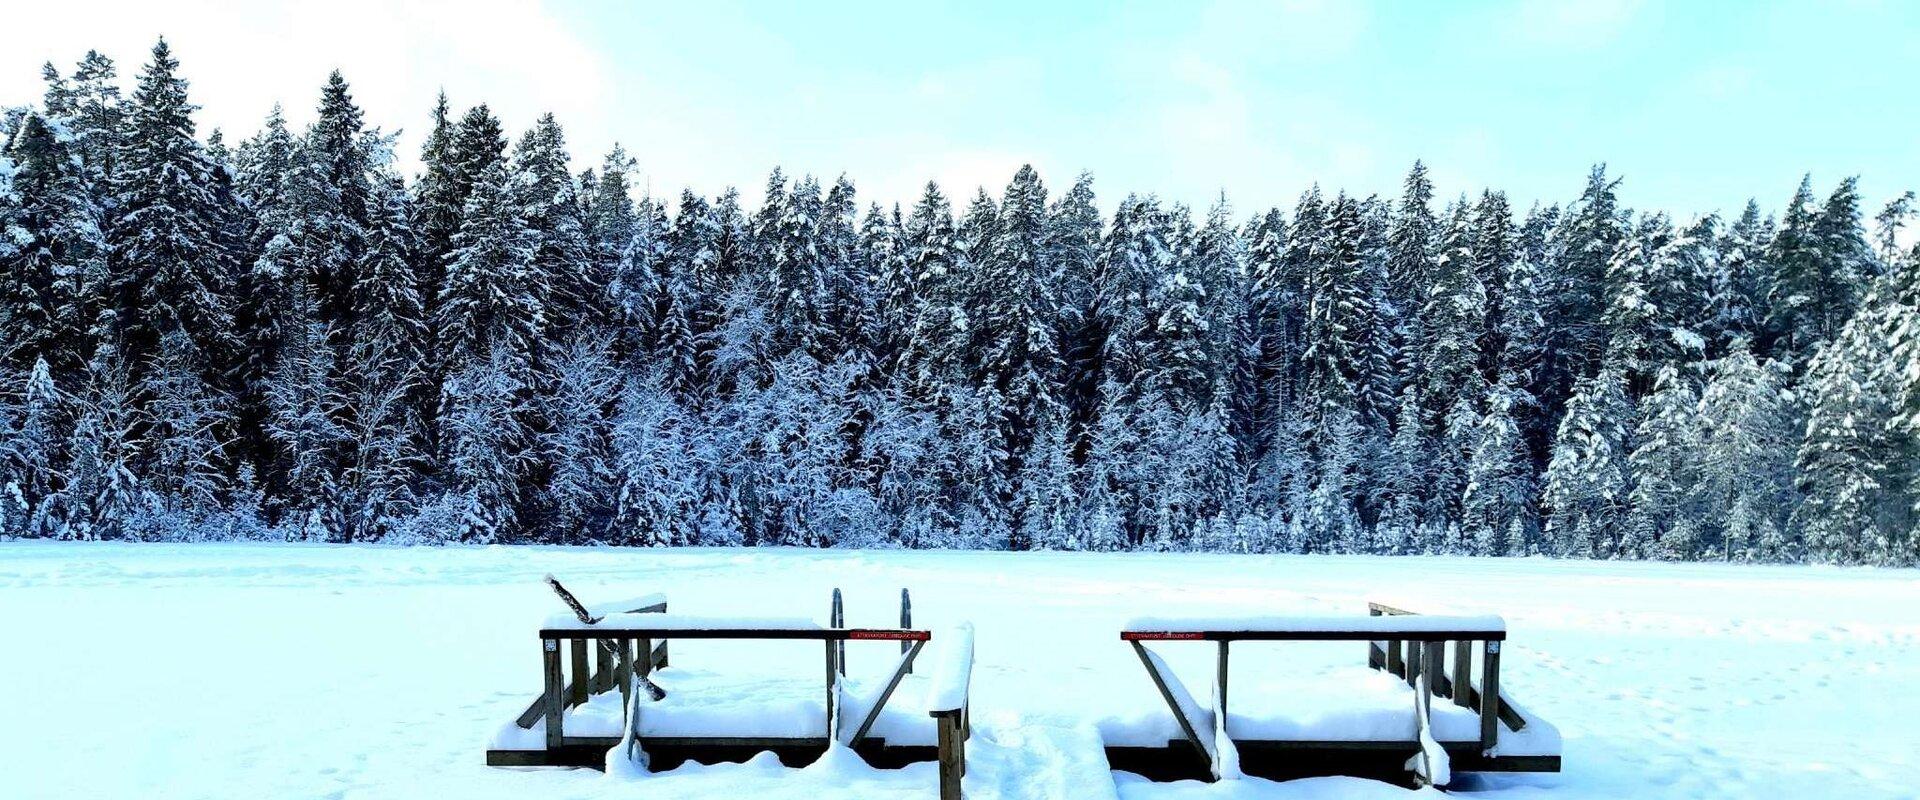 Vaikse järve supluskoht lumisel talvel